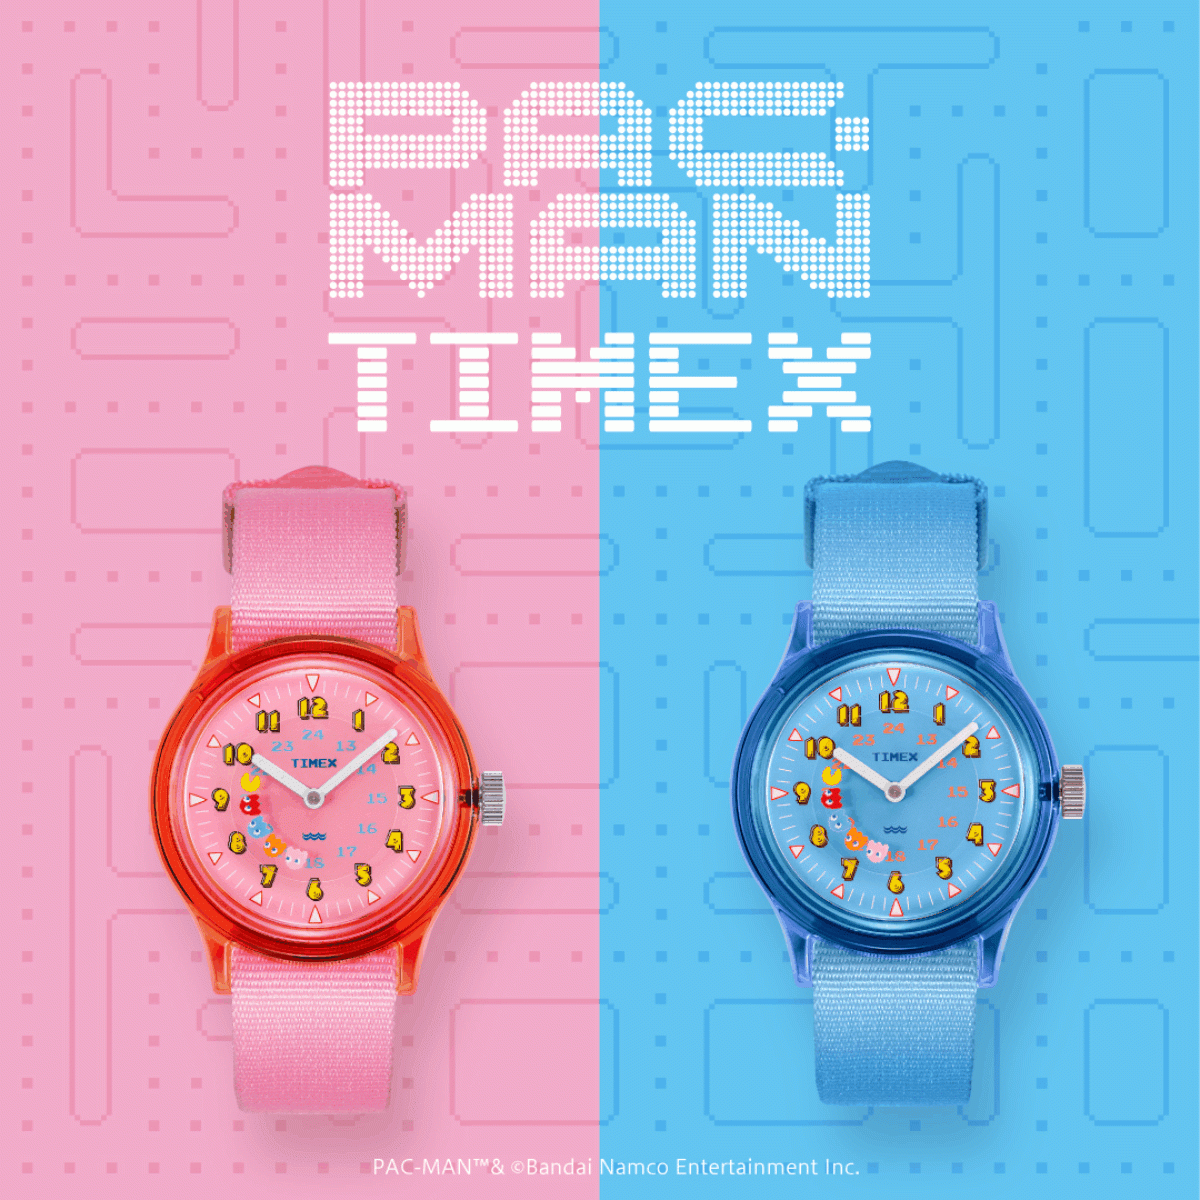 米国の腕時計ブランド「タイメックス」が日本を代表するビデオゲーム「パックマン」とのコラボウォッチ第3弾『 PAC-MAN × TIMEX 』を5月22日(月)予約開始、6月23日(金)発売